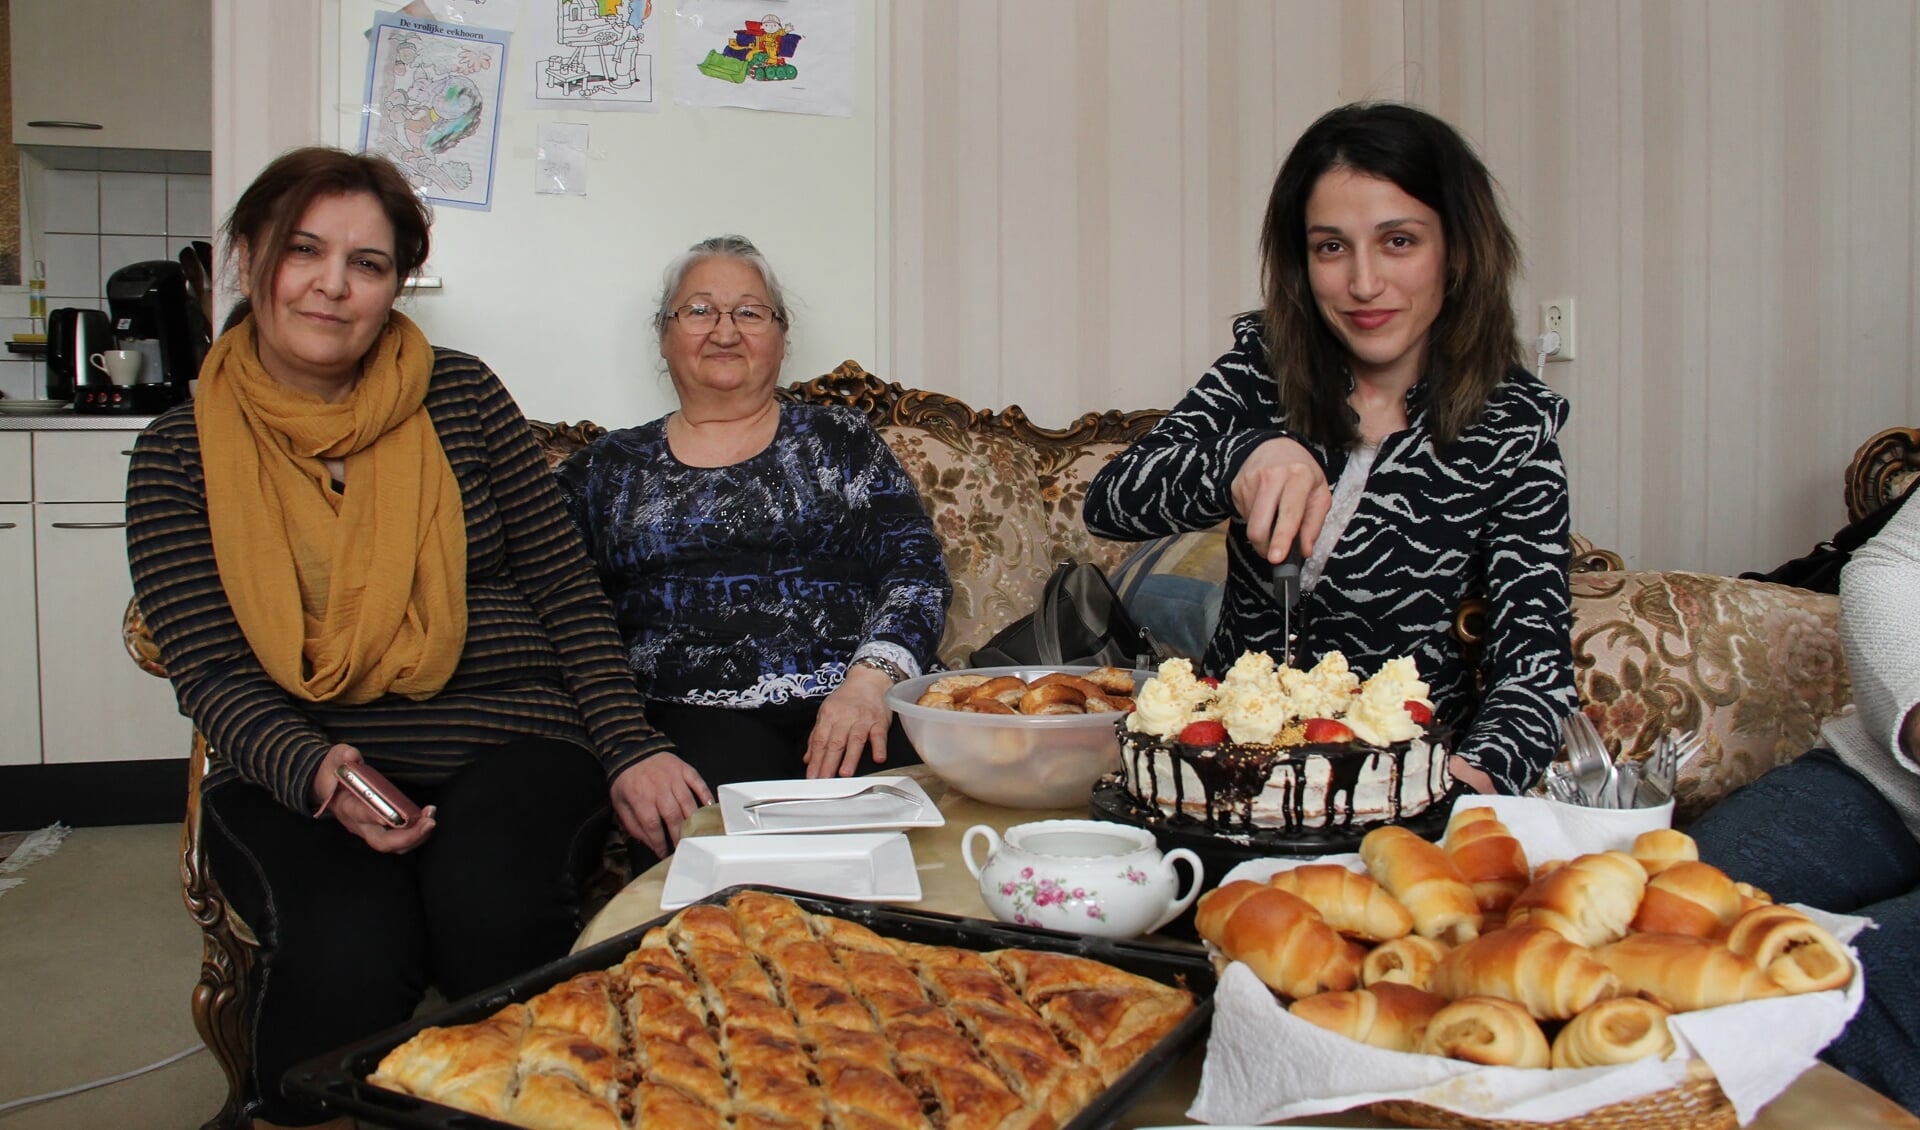 • Vlnr: Maro, Annahit en Tina. Zij bakken heerlijke Armeense lekkernijen.